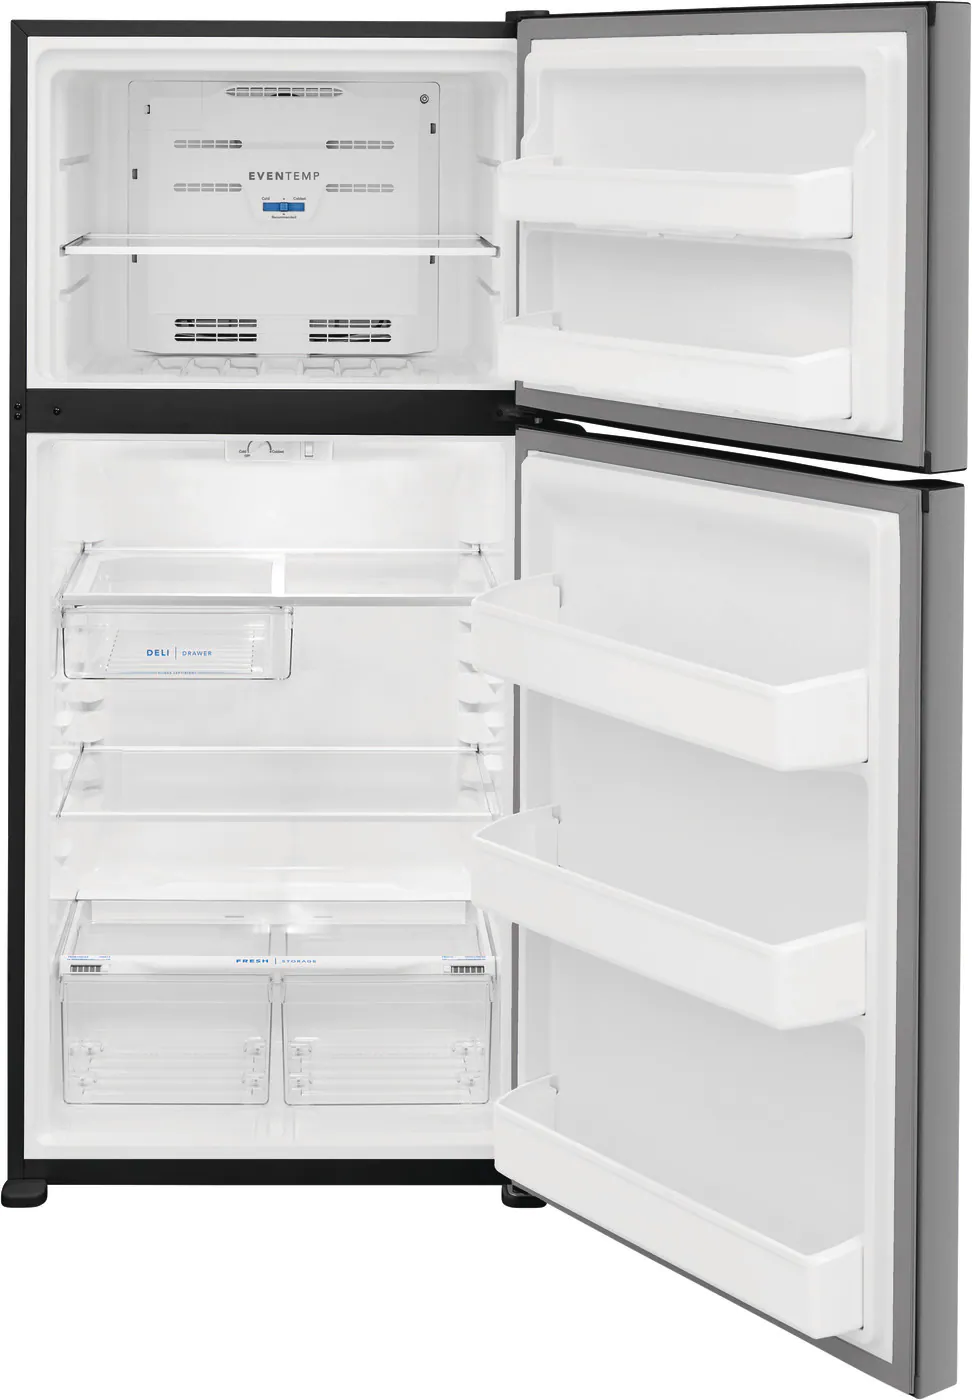 Top-freezer refrigerators